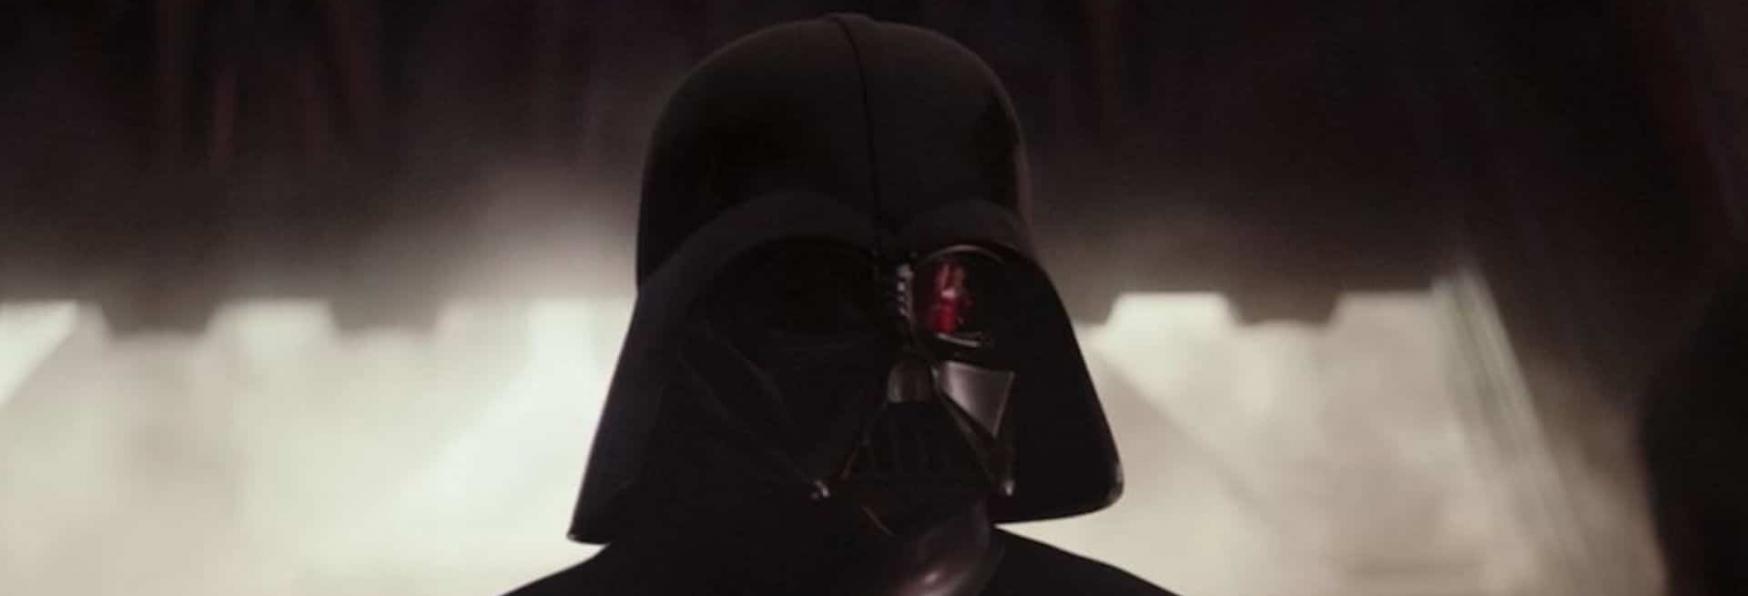 Obi-Wan Kenobi: ecco cosa ha provato Hayden Christensen tornando nel Ruolo di Darth Vader